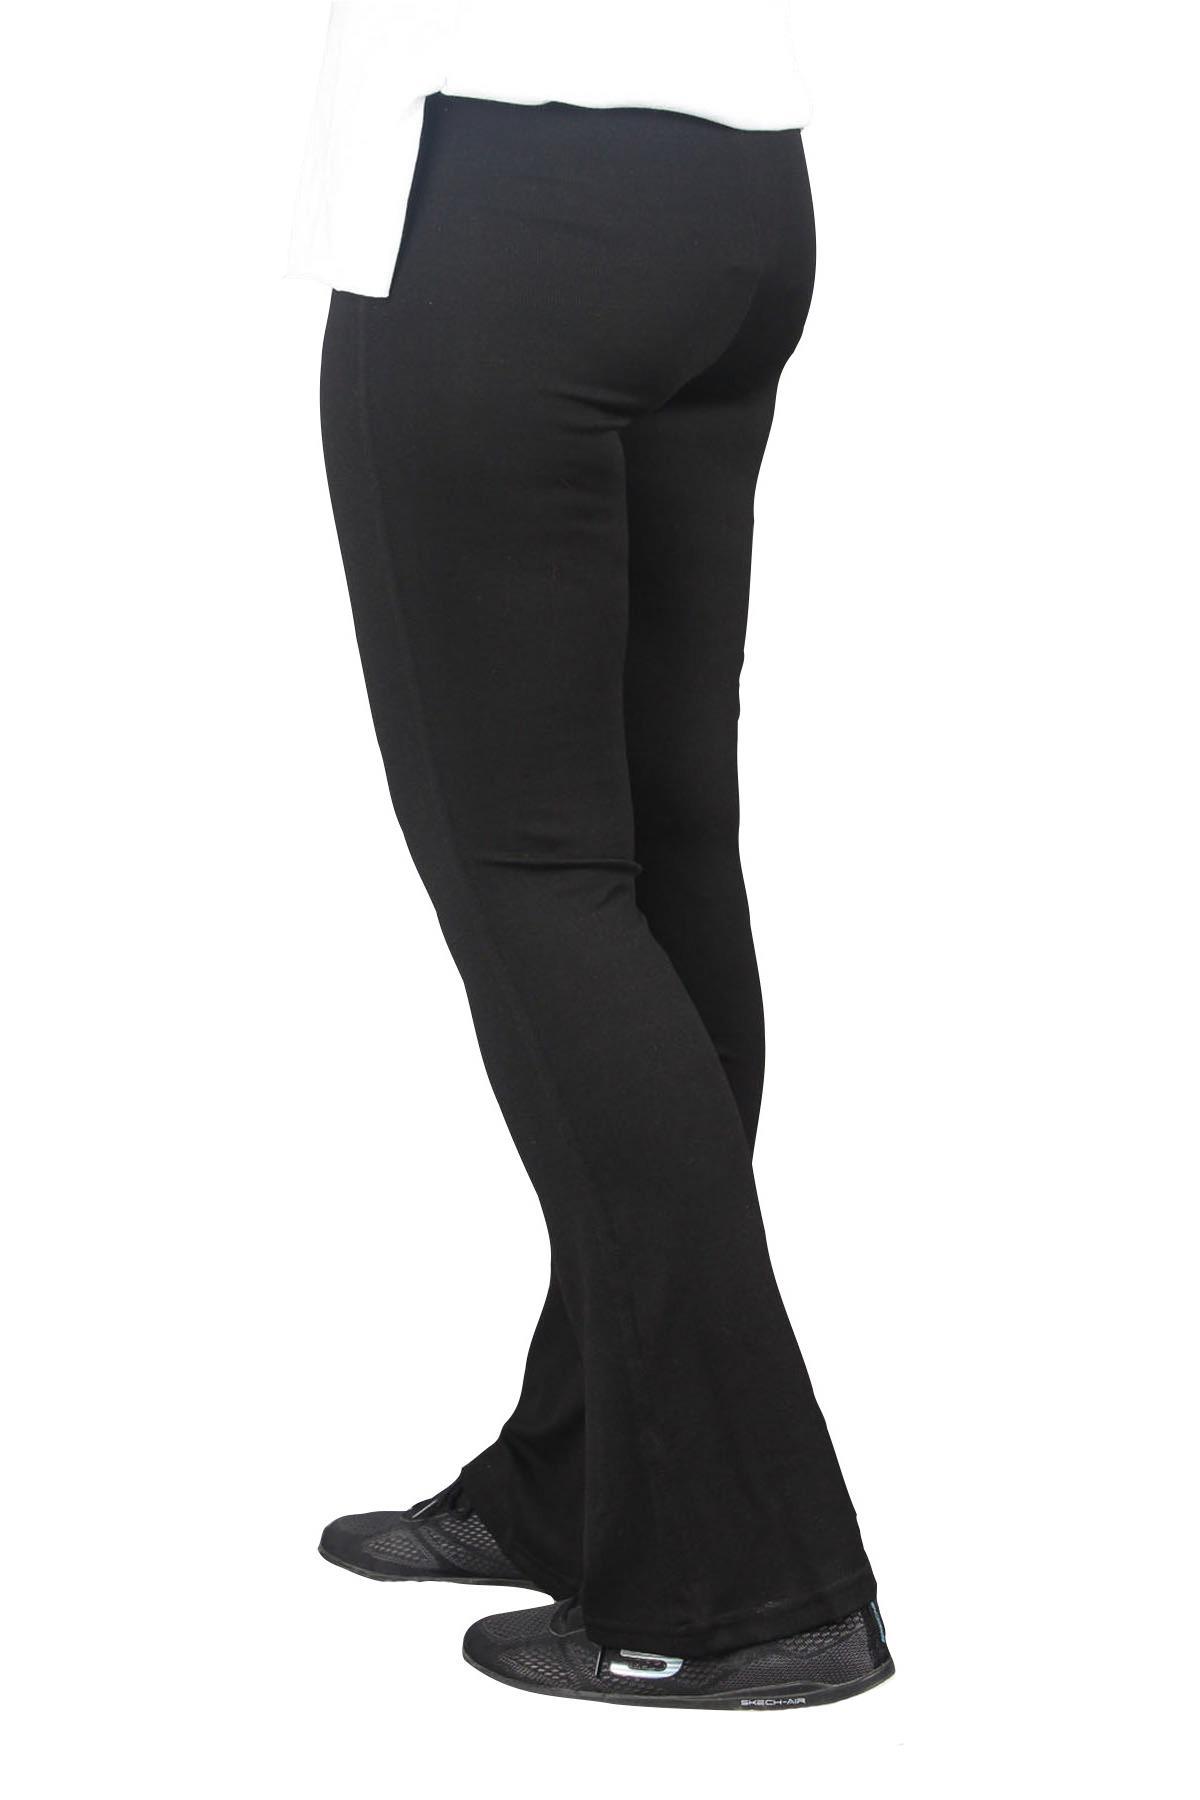 fierte-kadin-buyuk-beden-tayt-etkm001-yuksek-elastik-bel-ispanyol-paca-pantolon-spor-siyah-27520.jpg